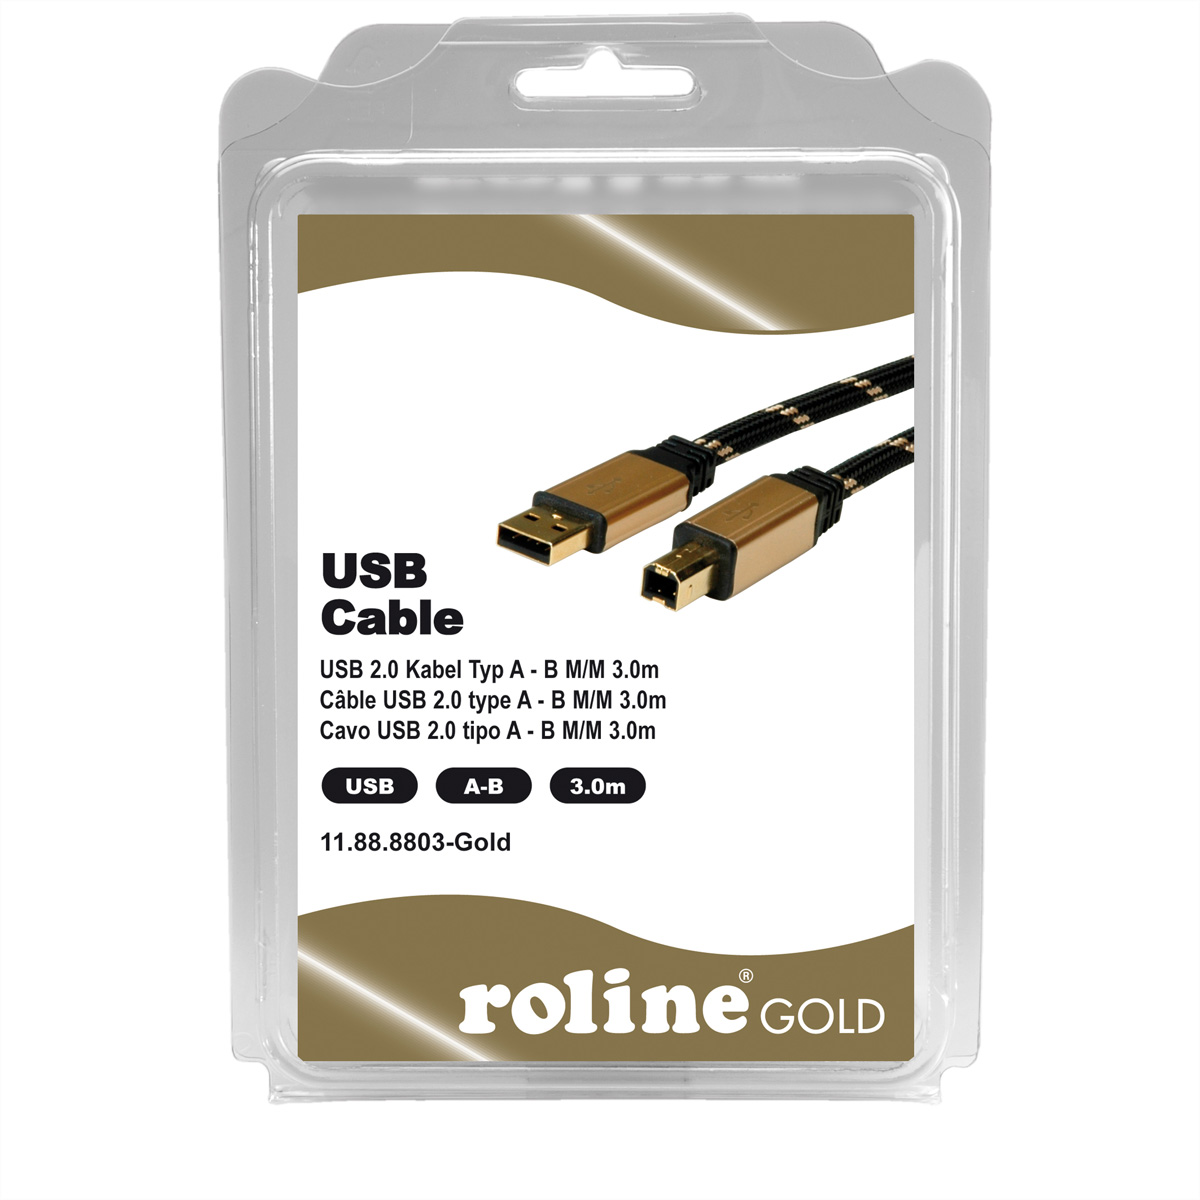 ROLINE GOLD USB 2.0 Kabel, Typ A-B Kabel USB 2.0